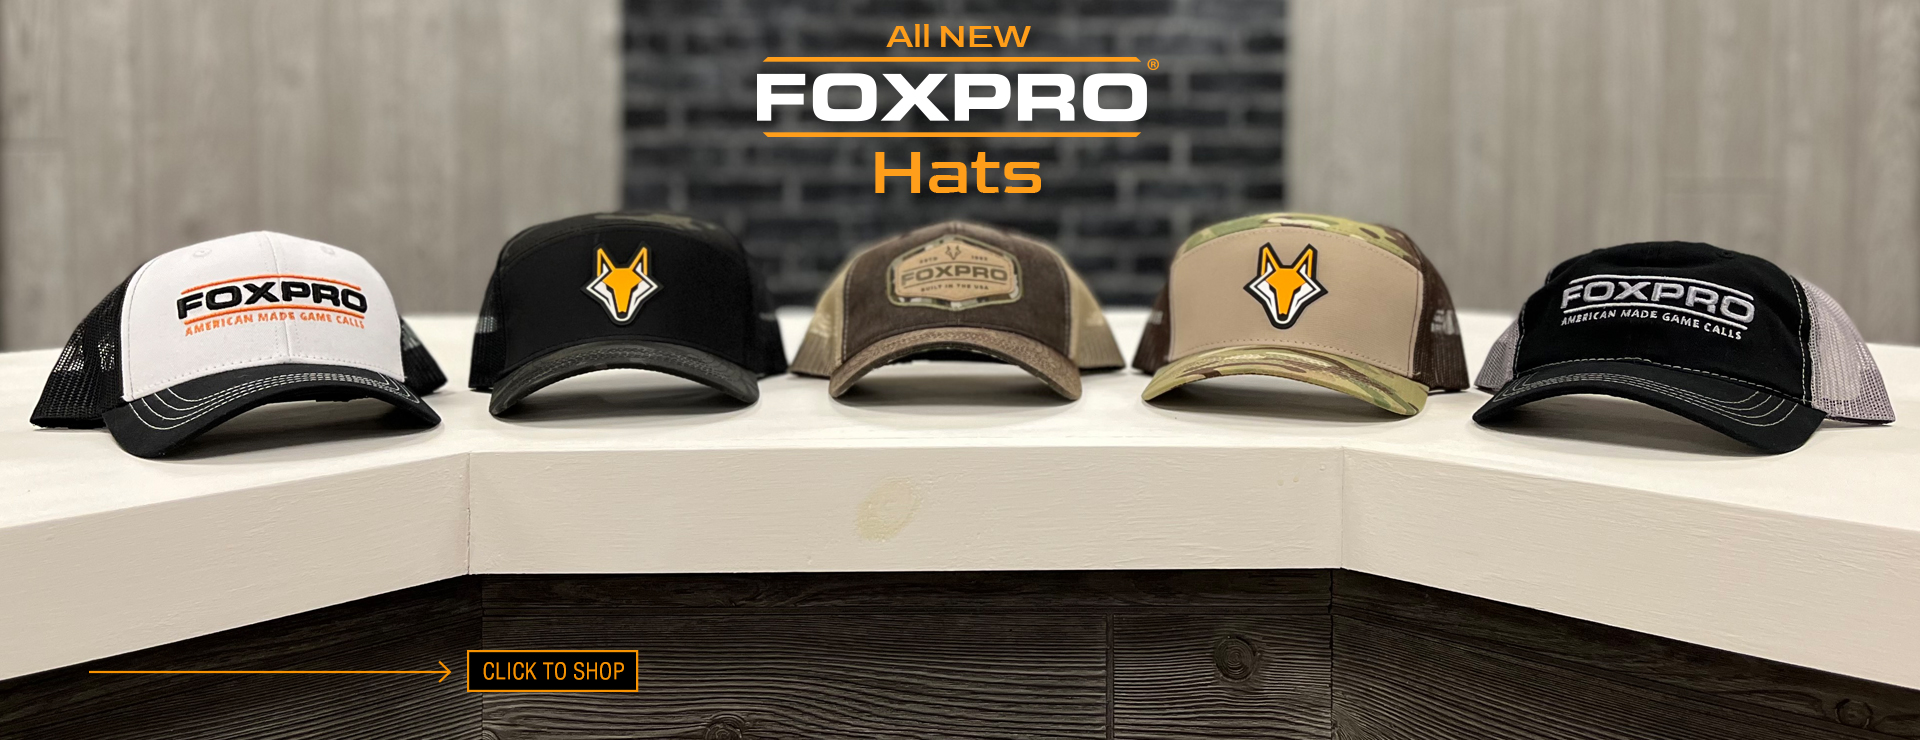 FOXPRO Apparel - New Hats